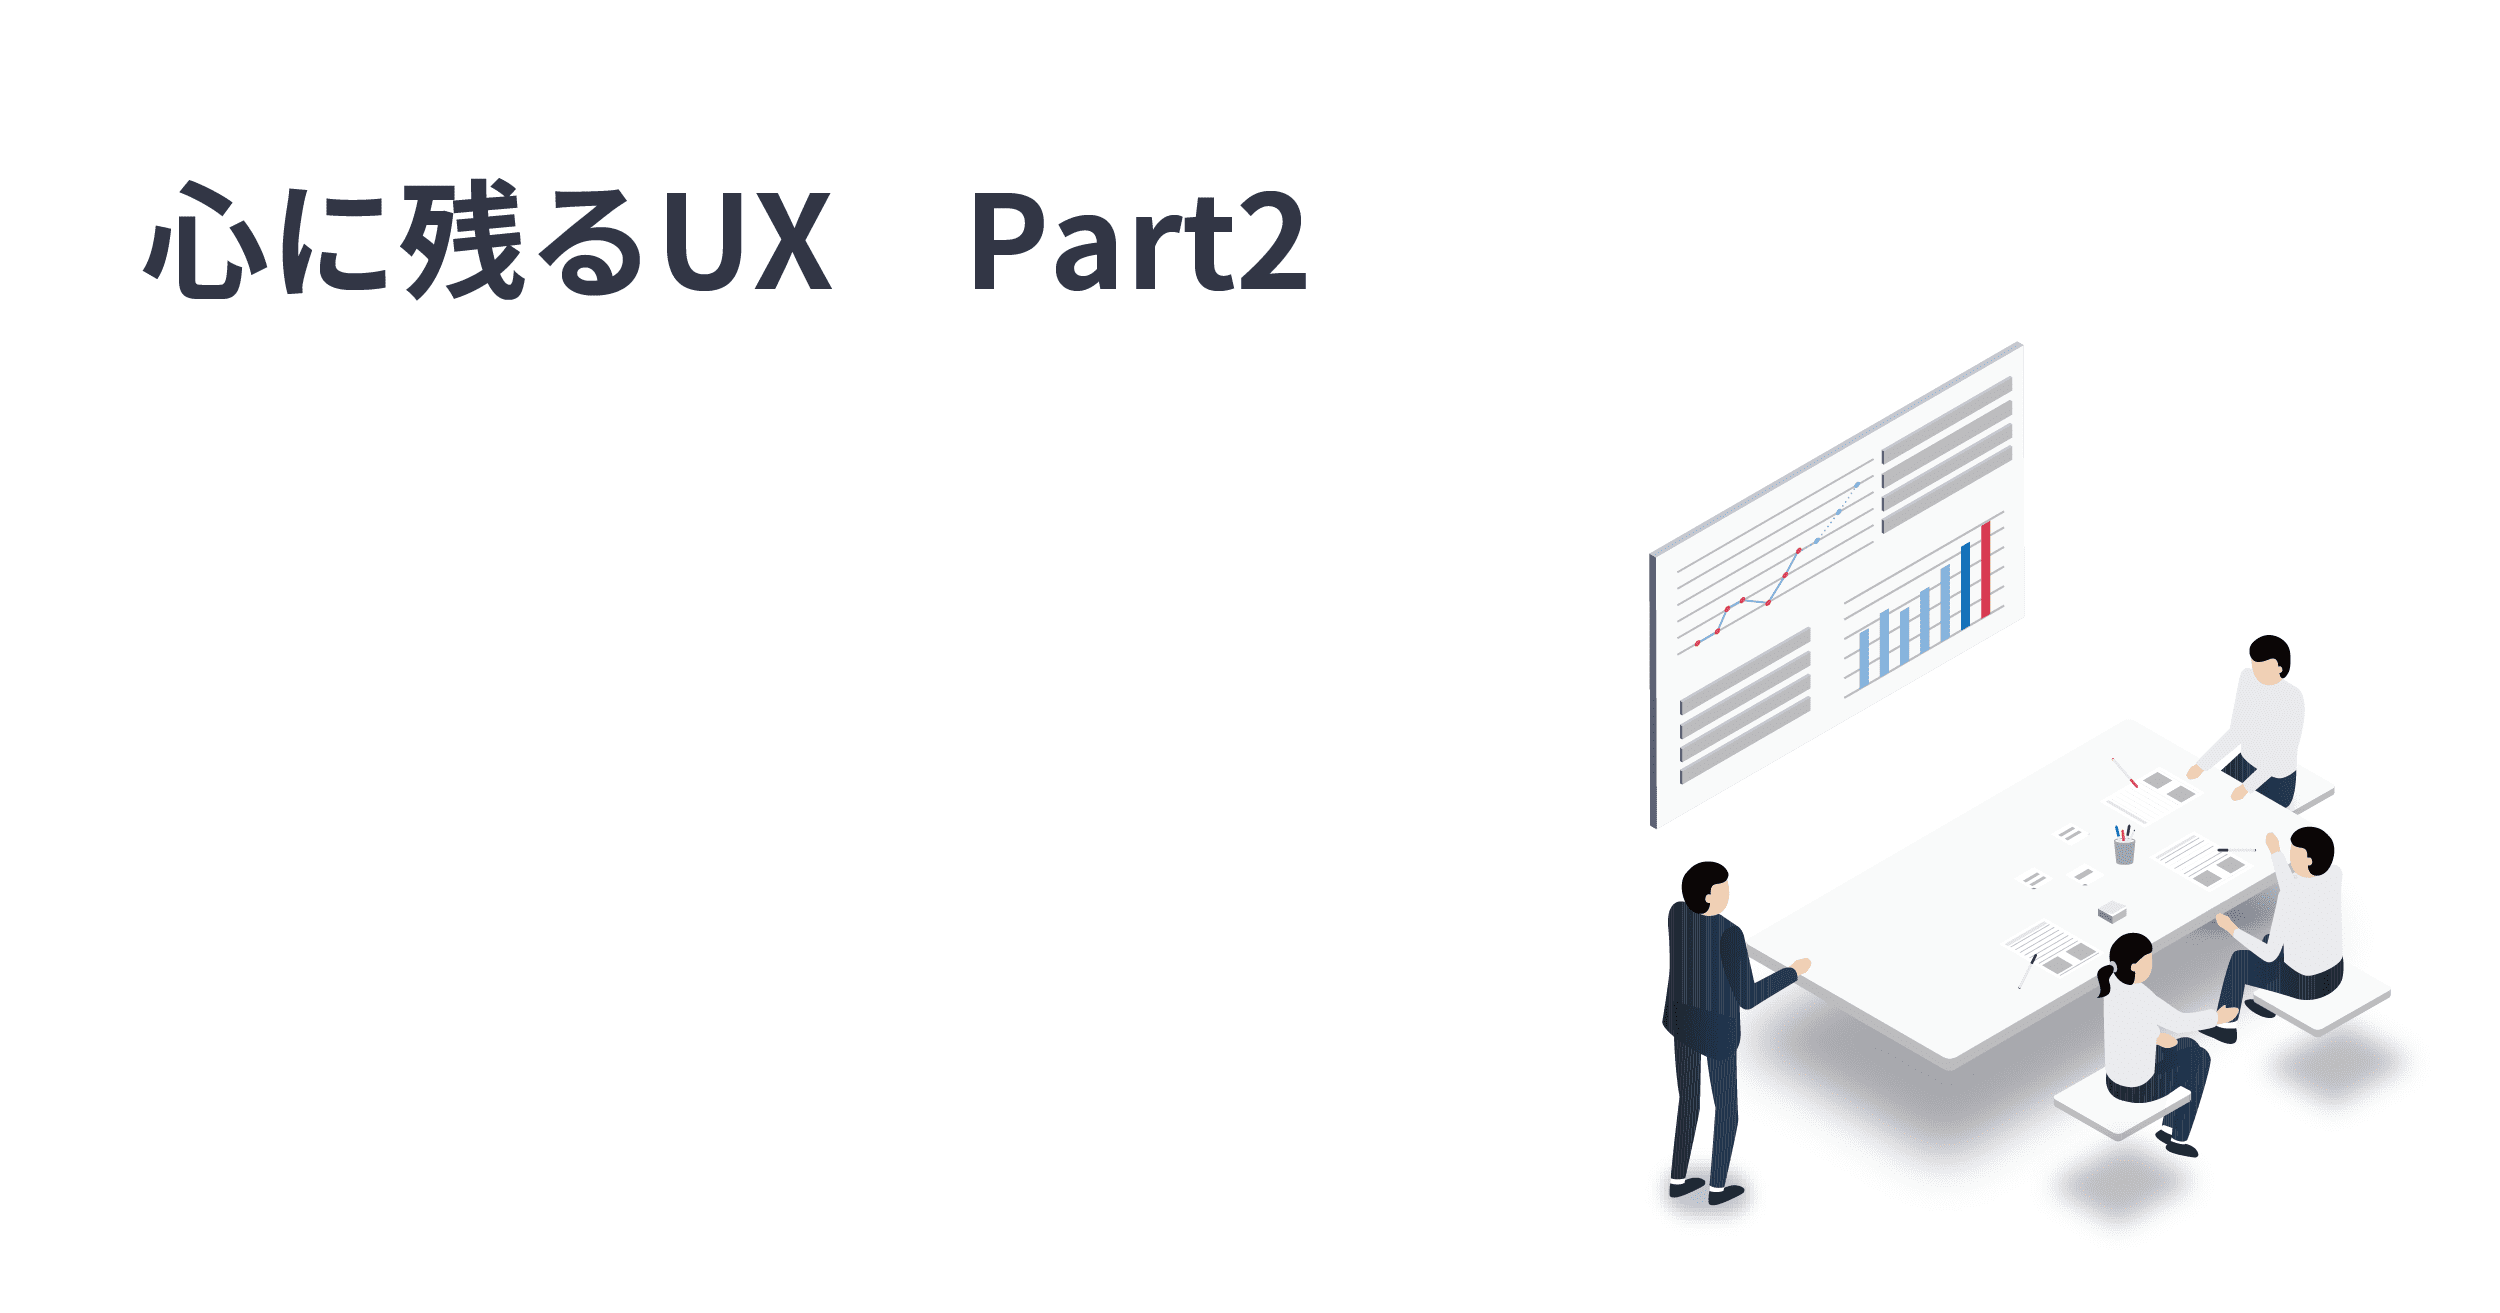 ユーザーの心に残るUXを生み出す50の戦略 ーpart2ー